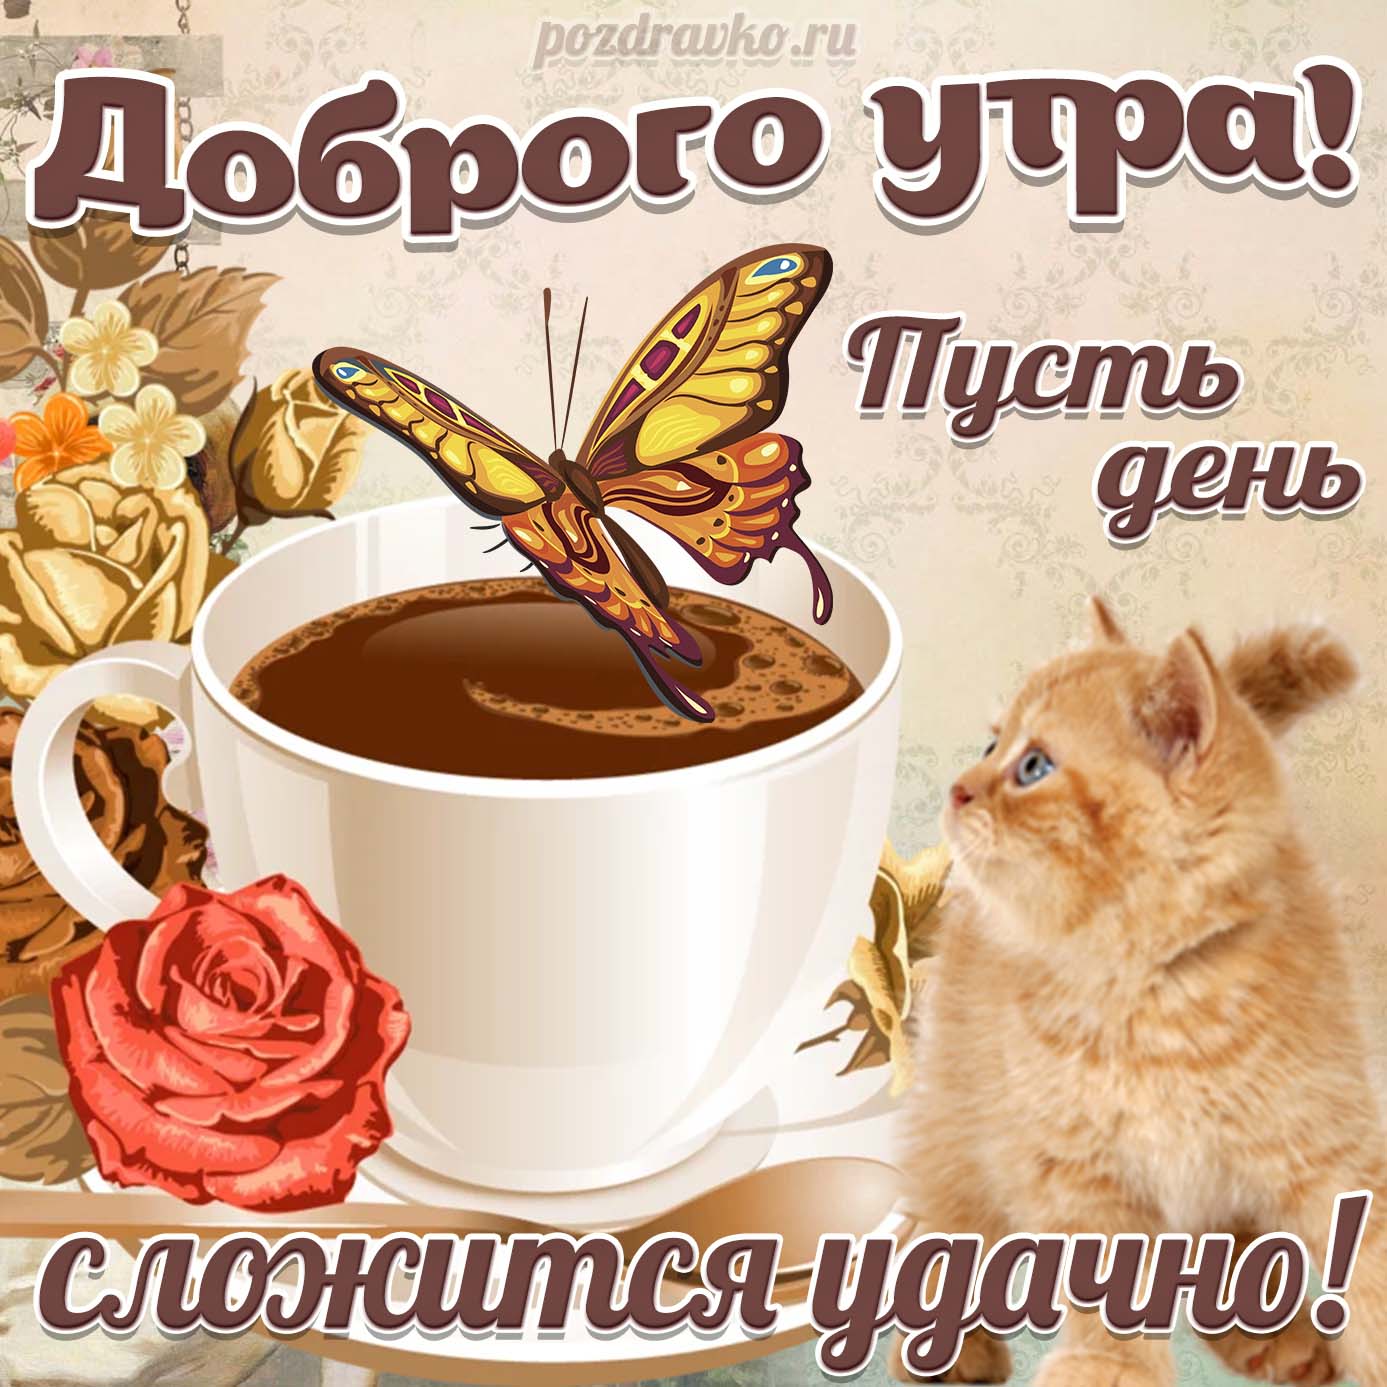 Открытка - Доброе Утро и пусть день сложится удачно с котиком и чашкой кофе. Скачать бесплатно или отправить картинку.